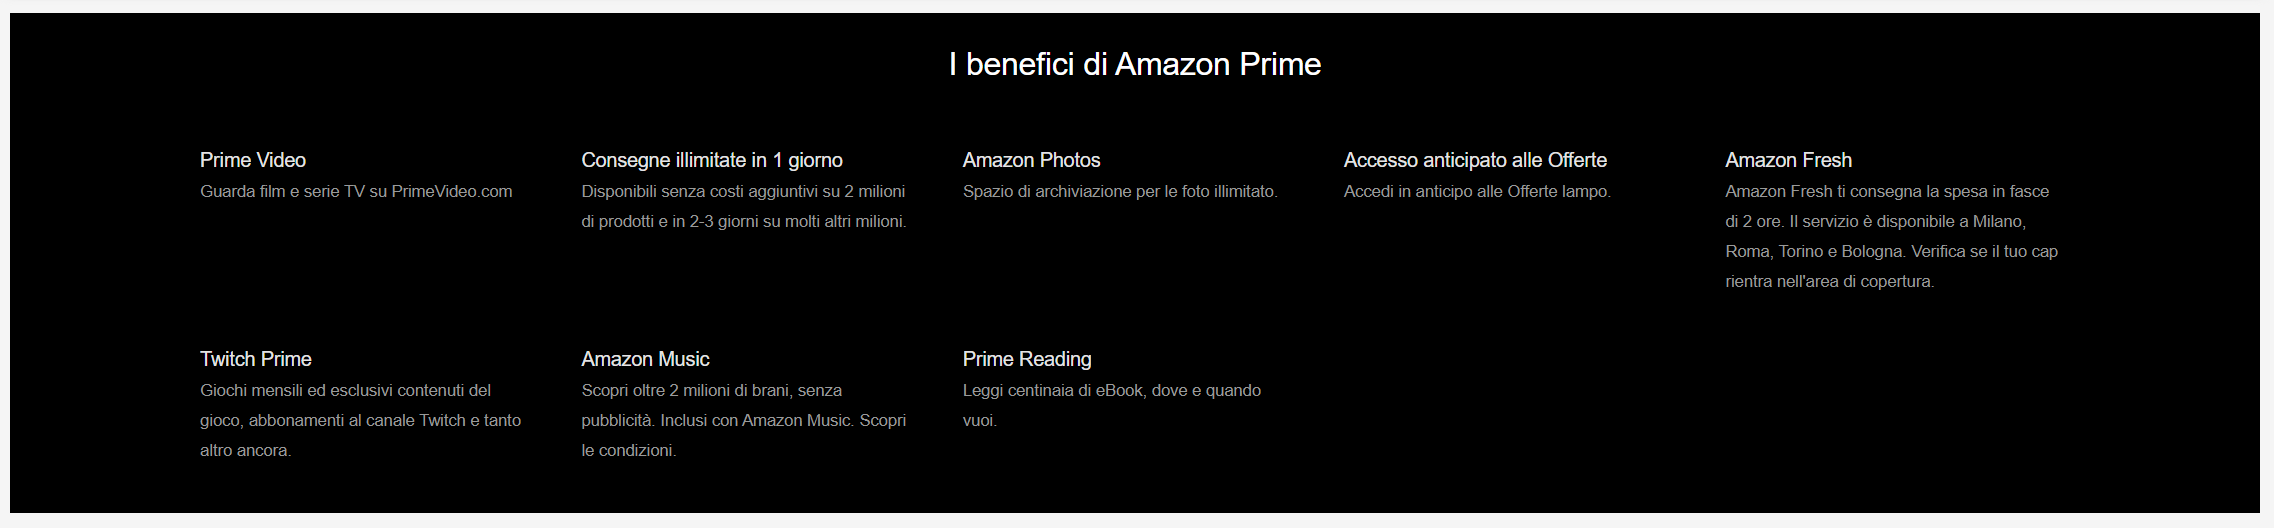 Amazon Prime - Tra i benefici scegli Amazon Photos